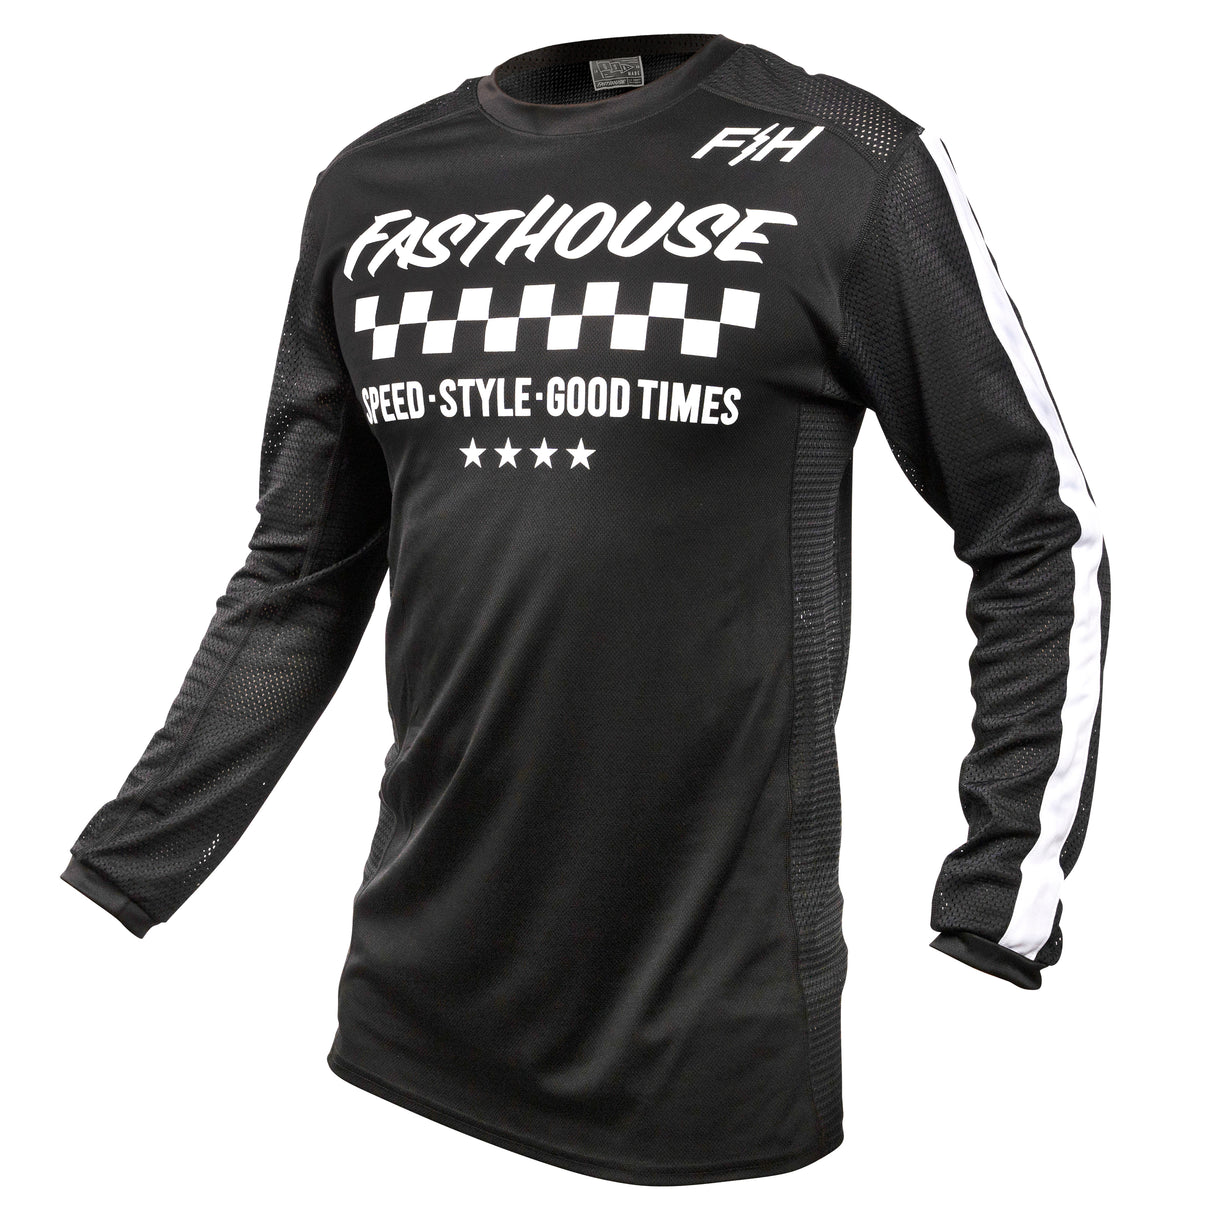 Camiseta de manga larga Fasthouse USA Originals refrigerada por aire